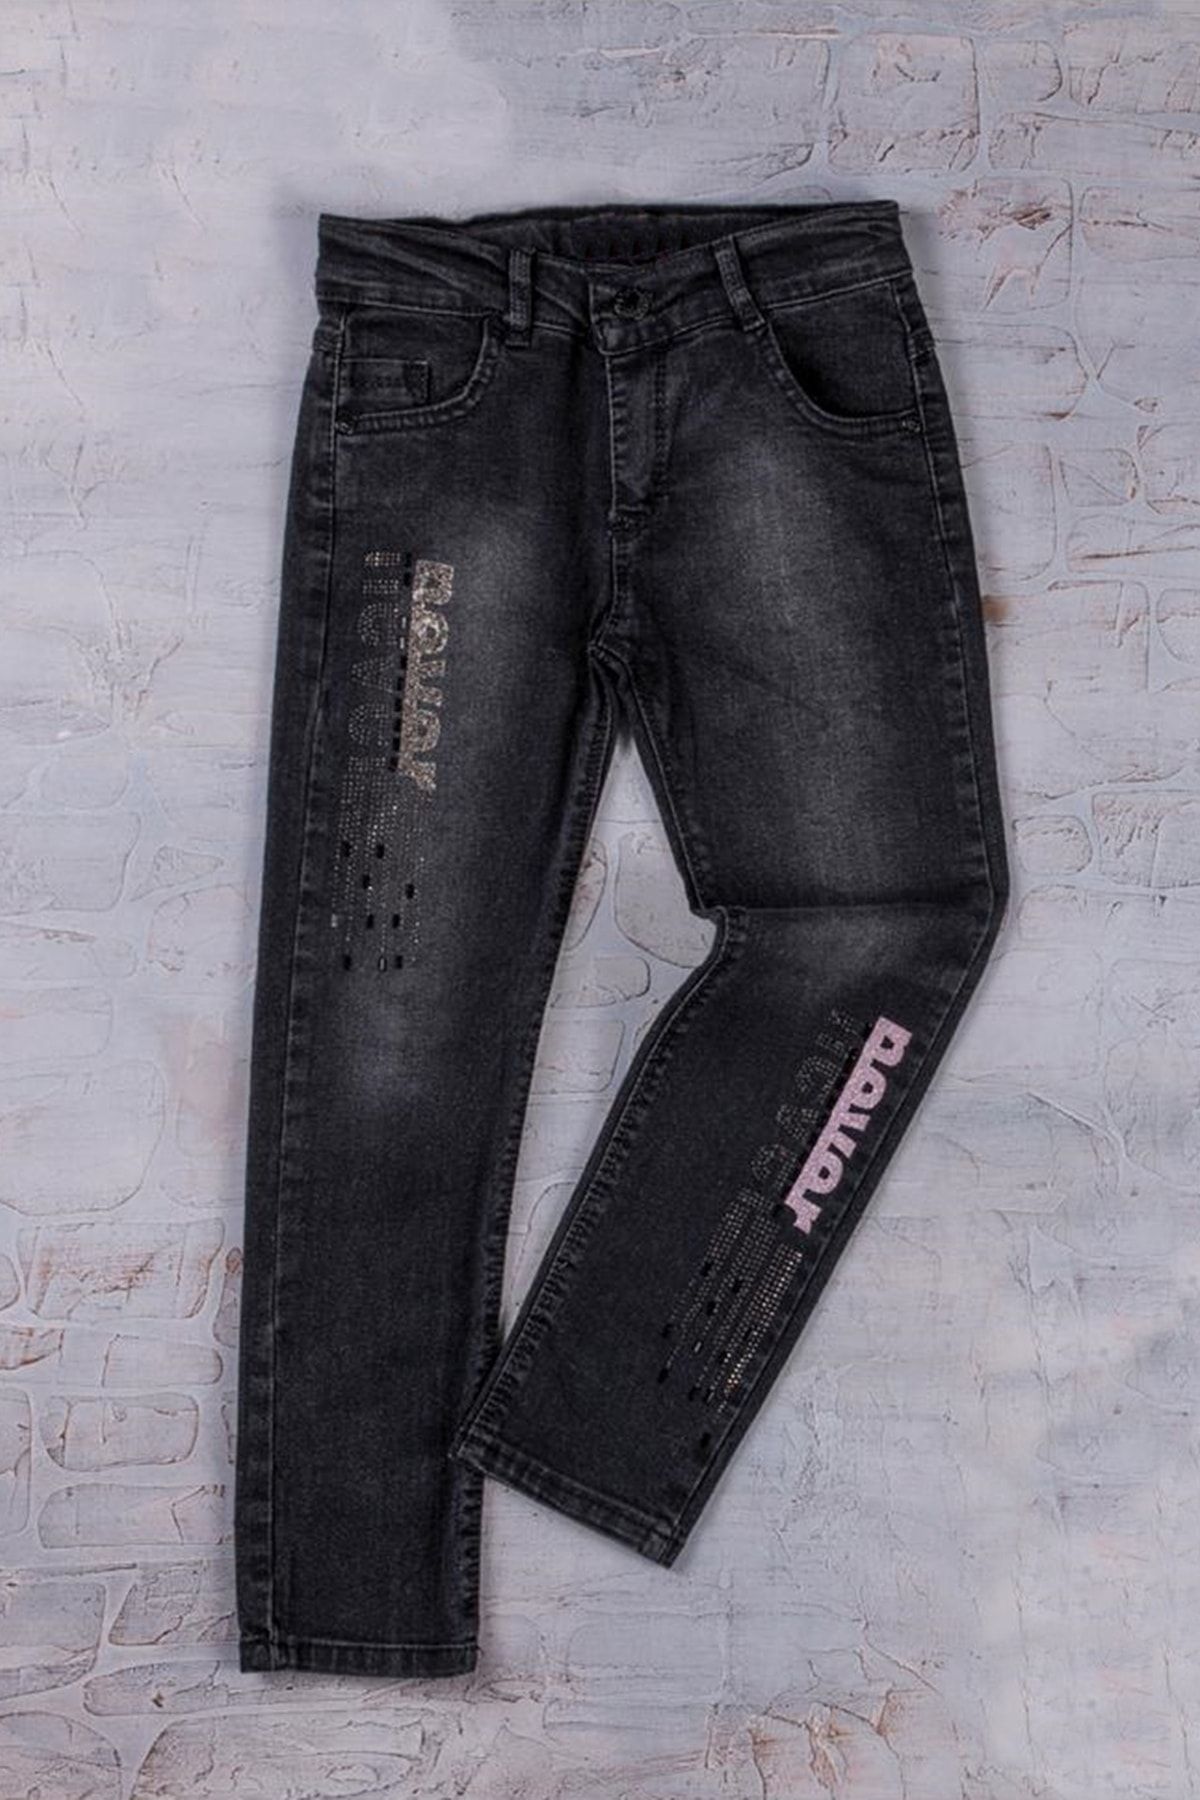 ADABEBEK Kız Çocuk Likralı Black Taşlı Jeans Kot Pantolon 8475-8474